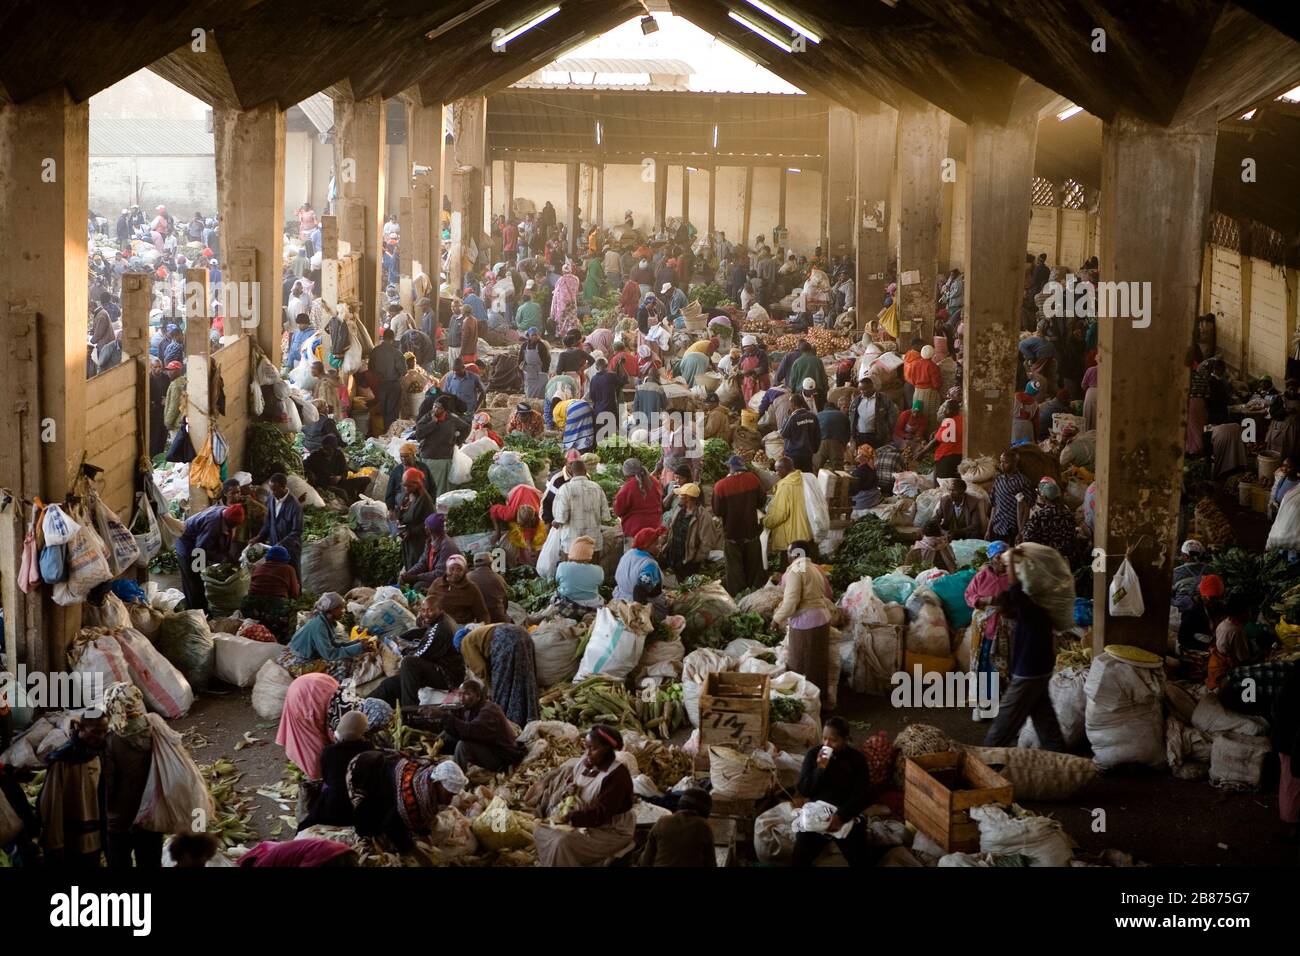 Una visione generale mostra il mercato di Wakulima a Nairobi, Kenya, il 9 marzo 2011. Wakulima è il più grande mercato dell'Africa orientale. Foto Stock